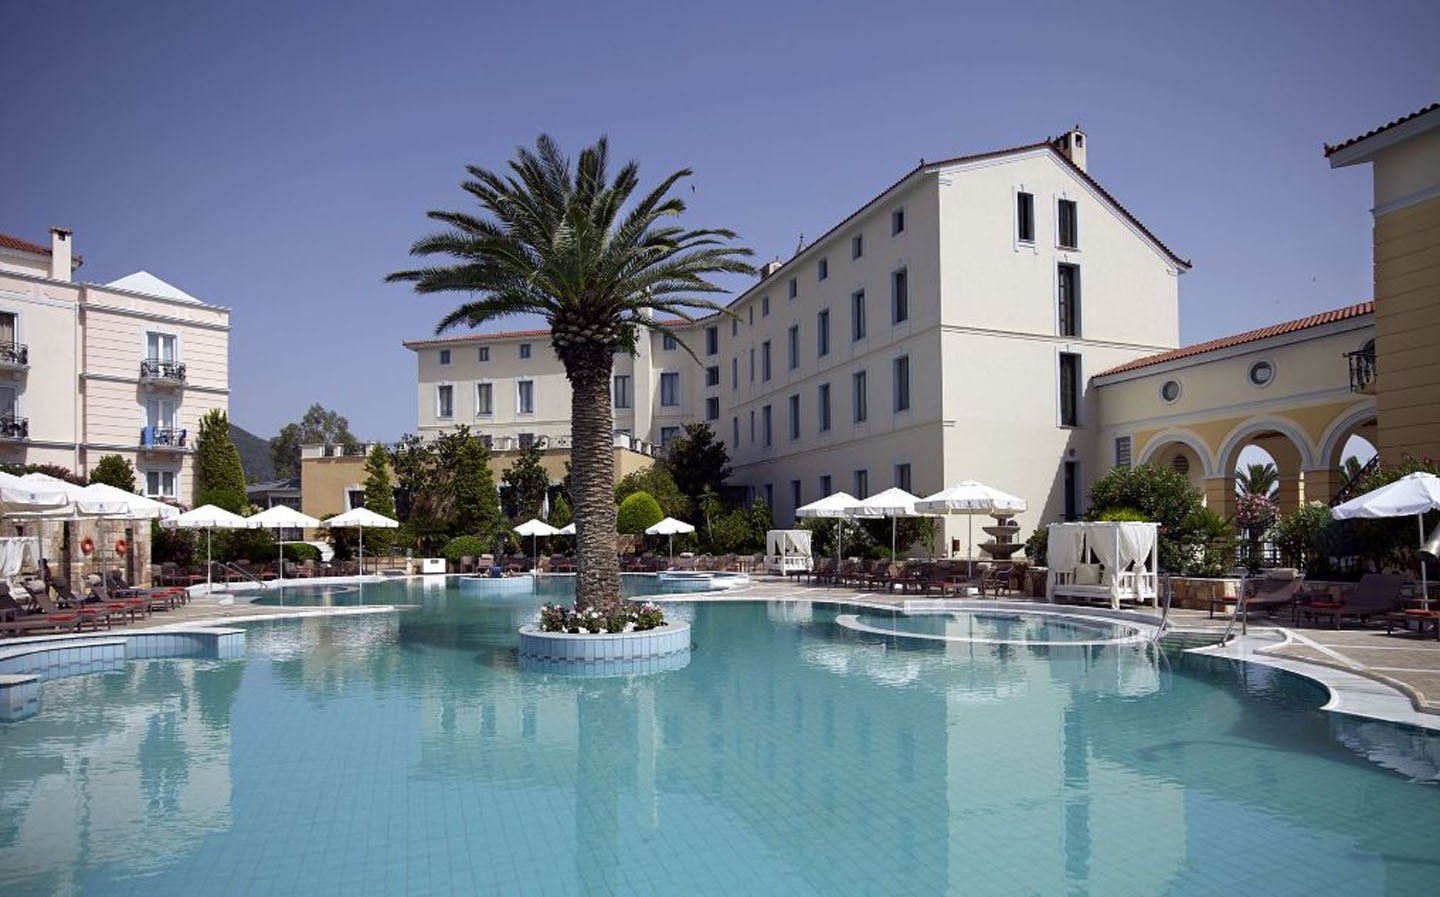 10 hotéis com piscinas termais  (Foto: divulgação)